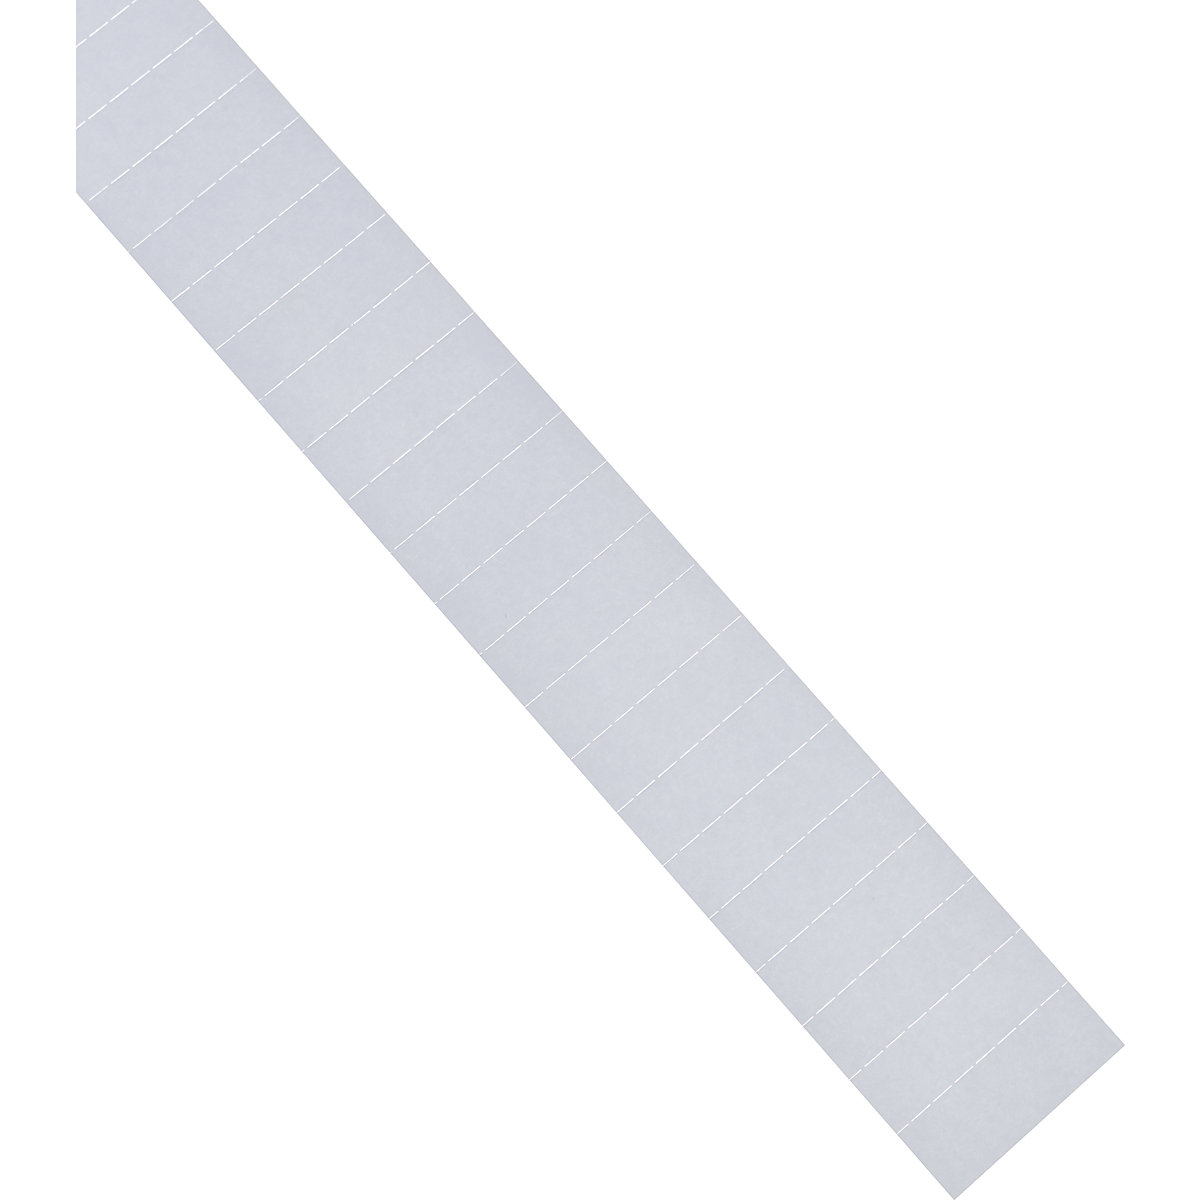 Insteekkaarten – magnetoplan, 60 mm, VE = 630 stuks, wit-9